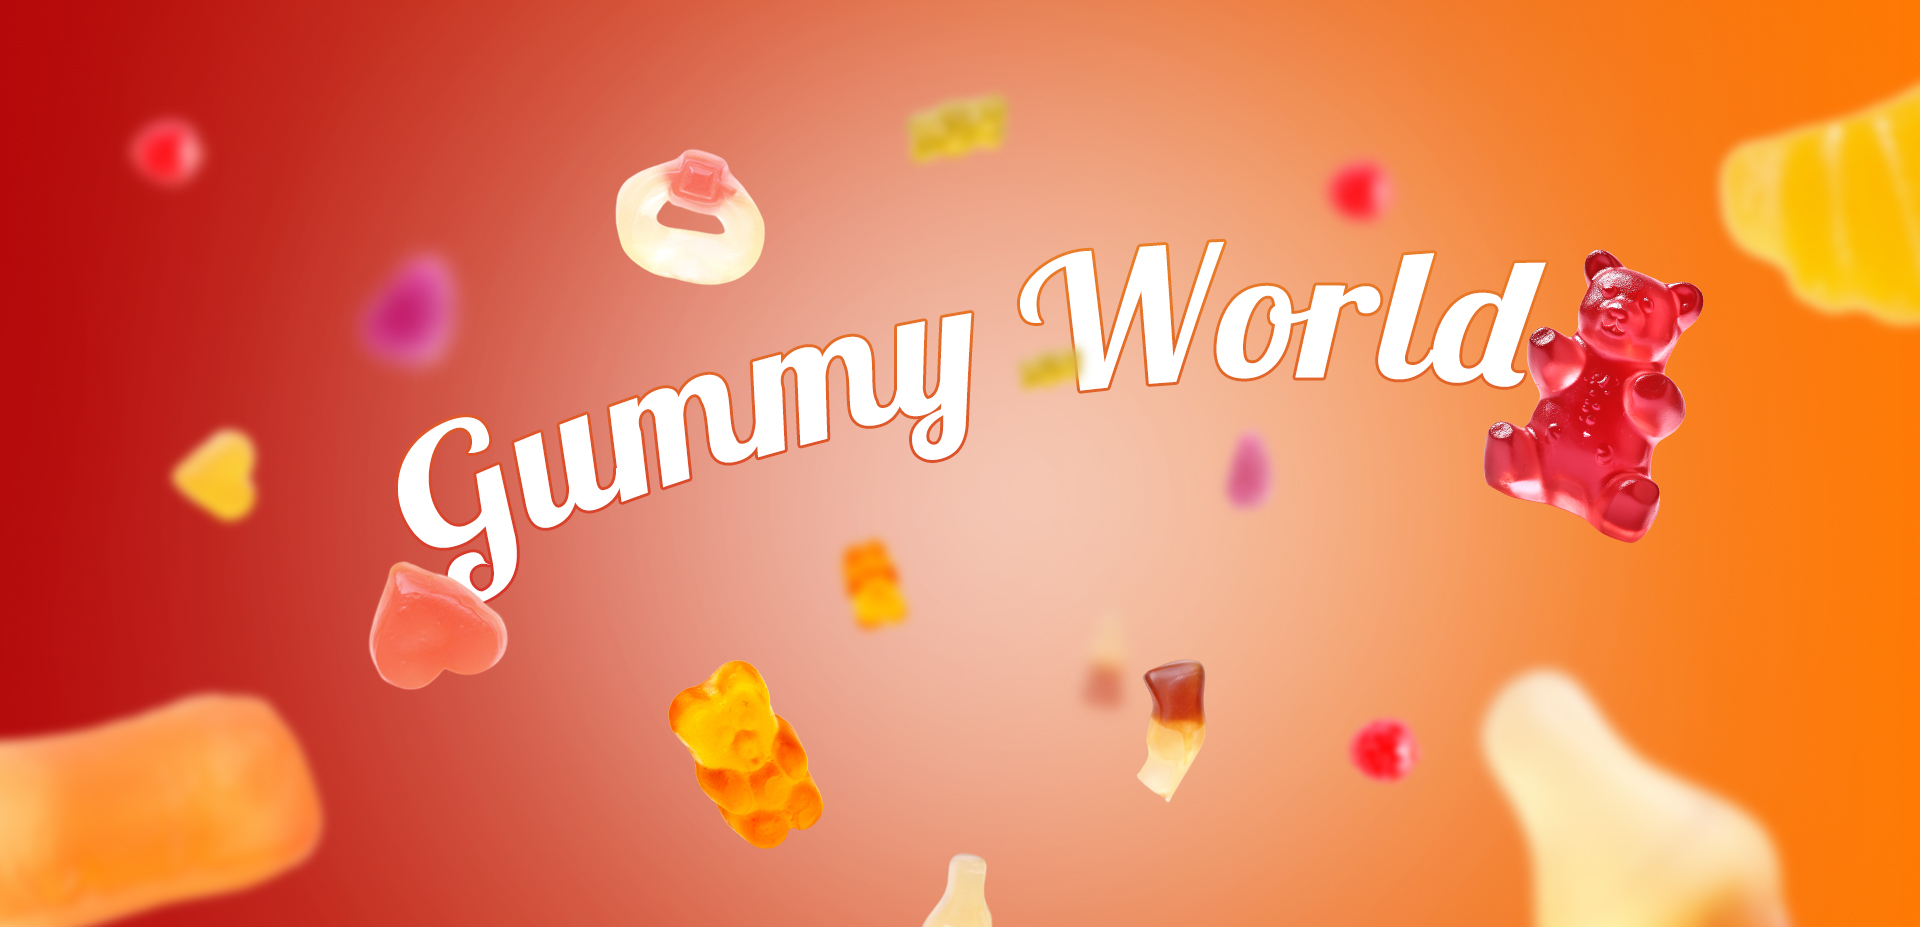 Gummy world